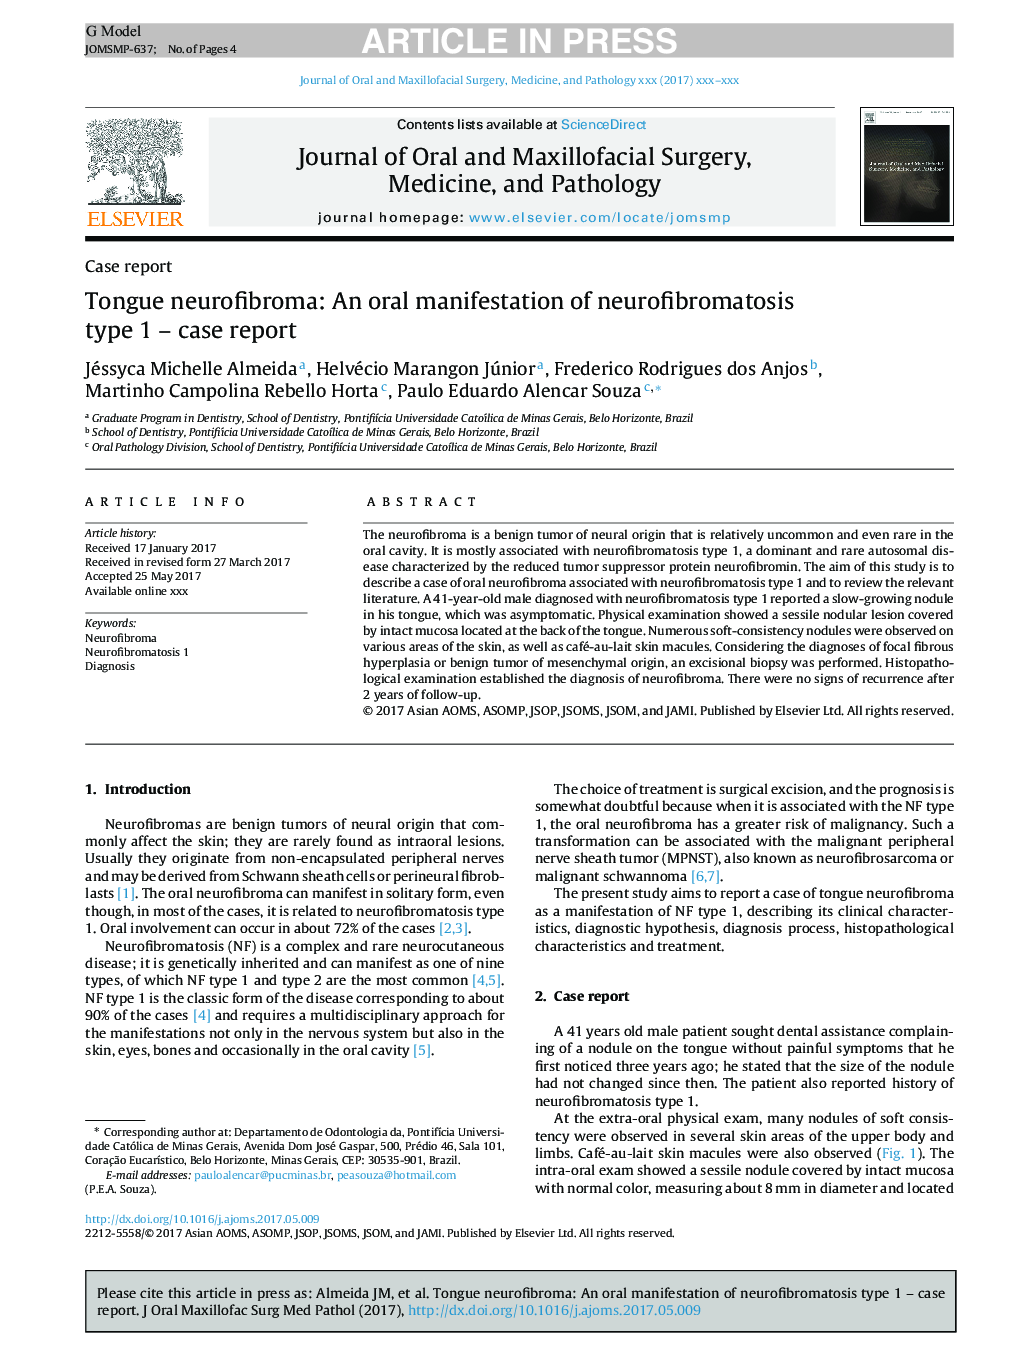 Tongue neurofibroma: An oral manifestation of neurofibromatosis type 1 - case report